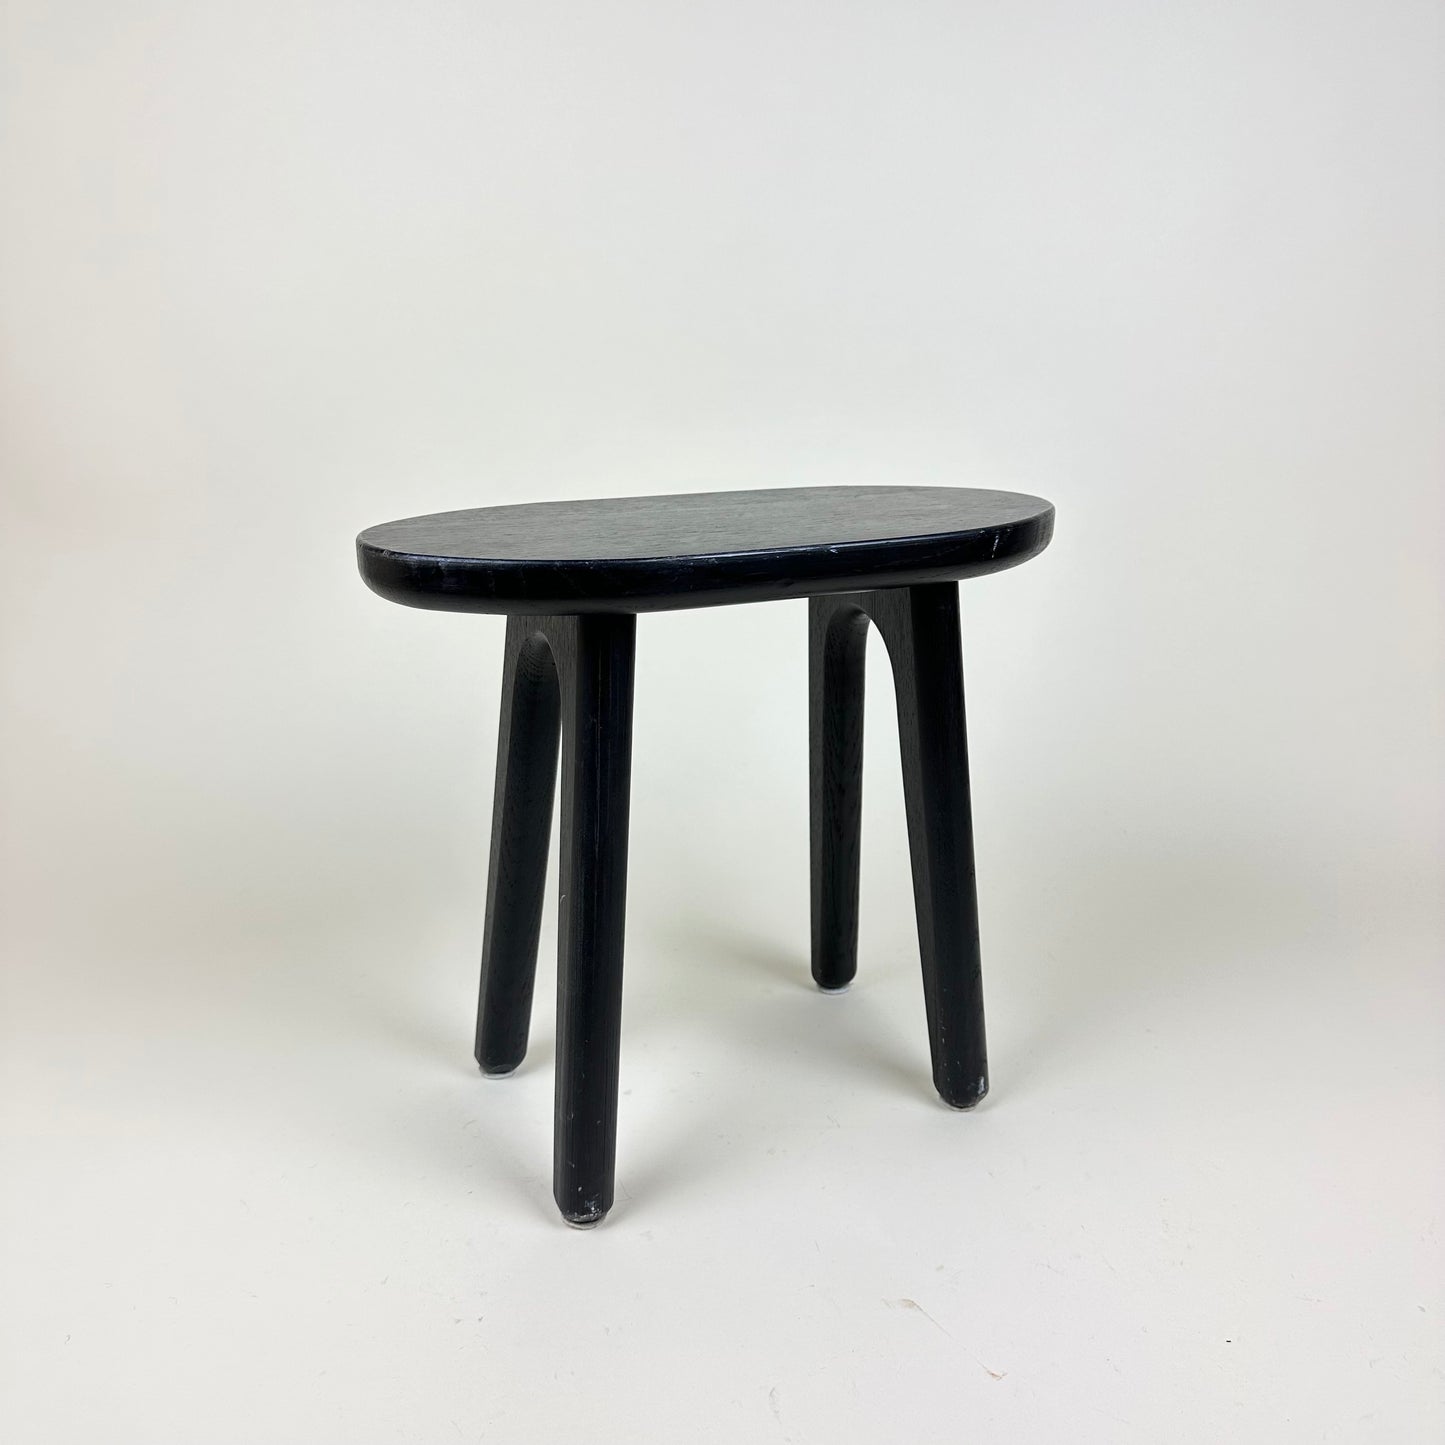 Small black 4 legged stool, vintage